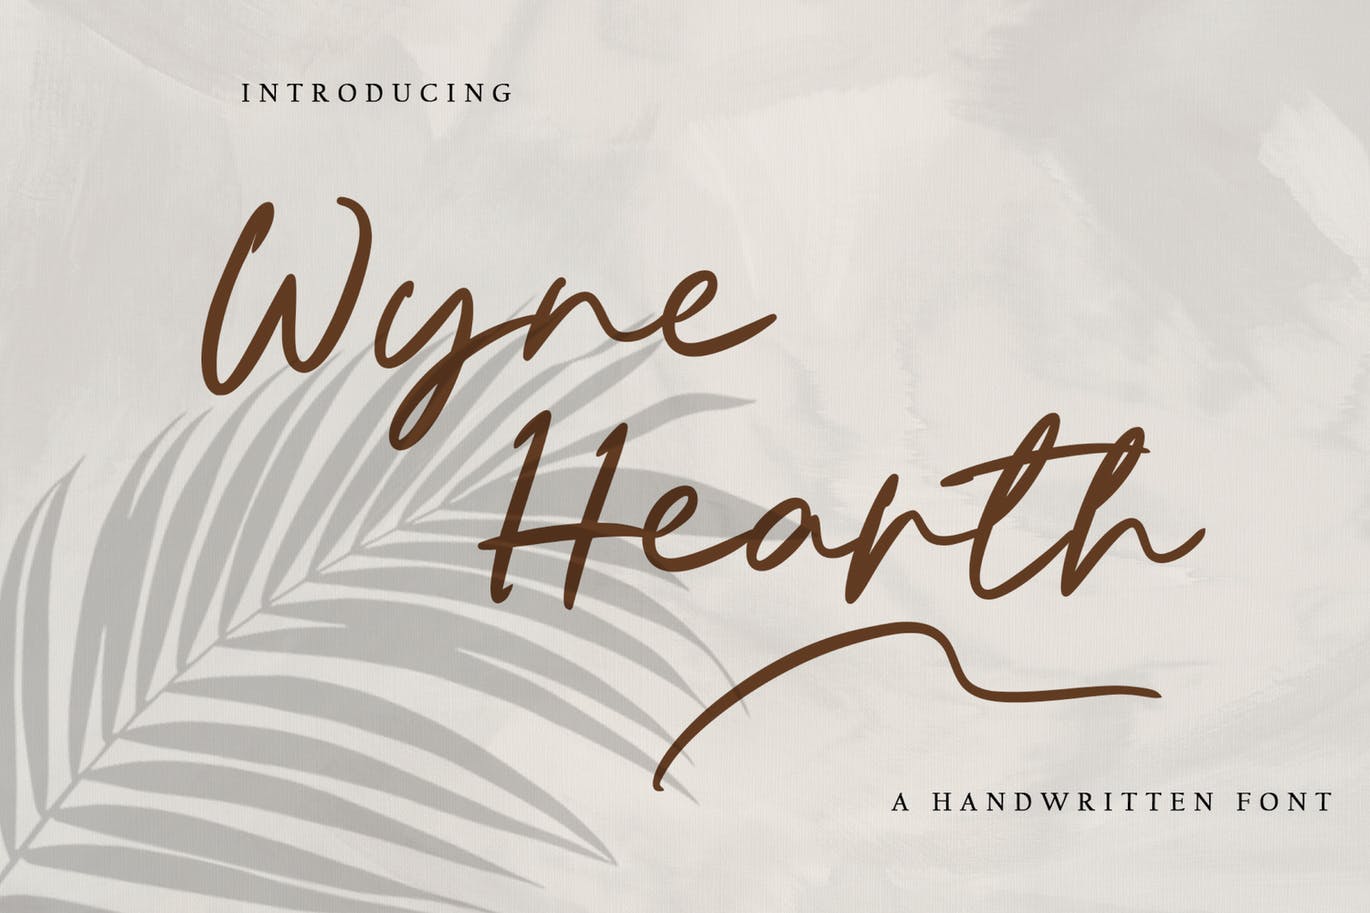 连字手写英文字体素材 Wyne Hearth 设计素材 第1张